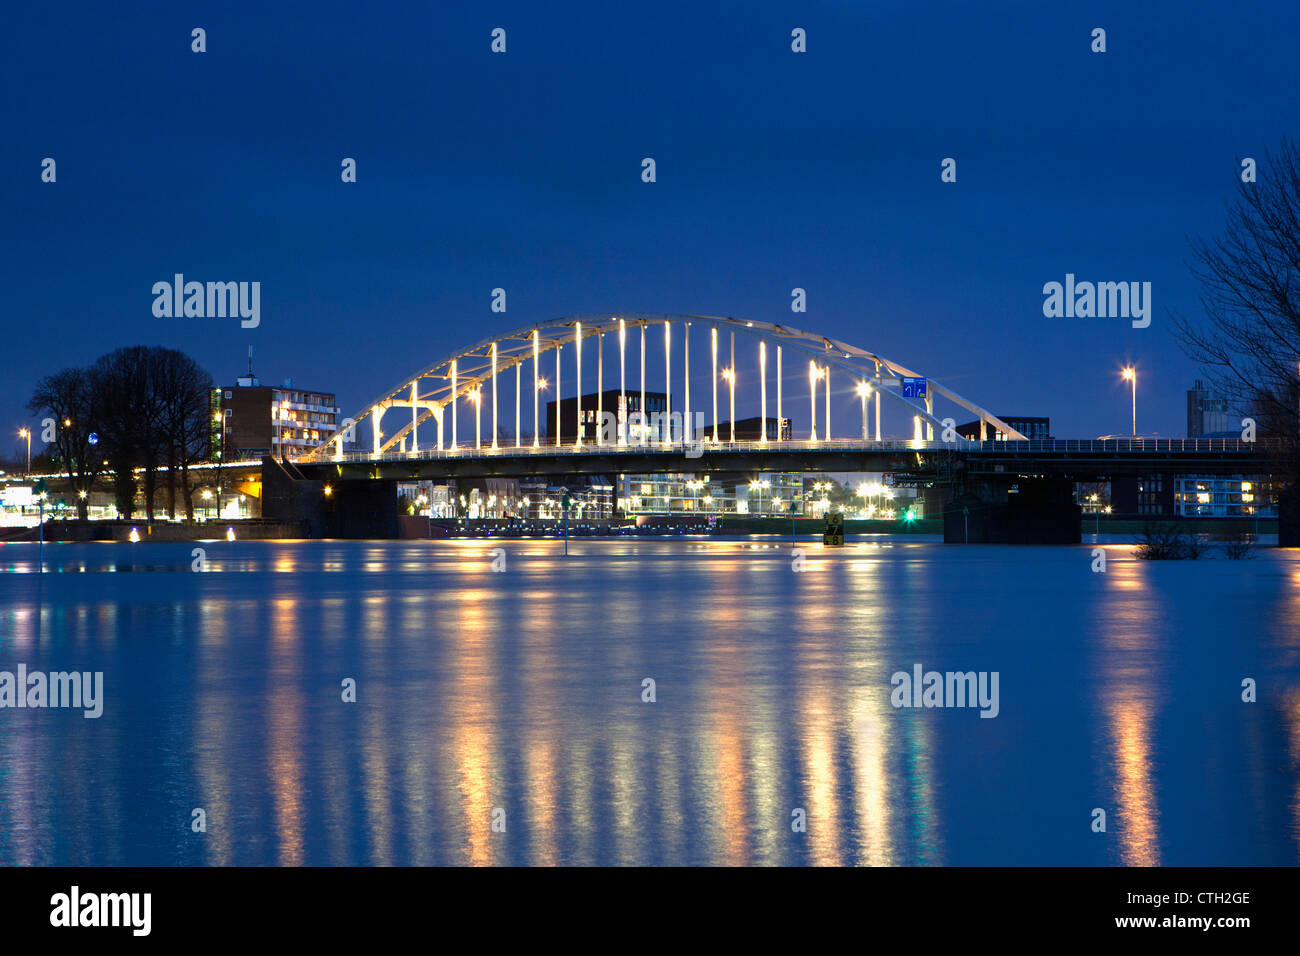 Die Niederlande, Deventer, Brücke über die Ijssel Fluss. Einbruch der Dunkelheit. Hochwasser. Stockfoto